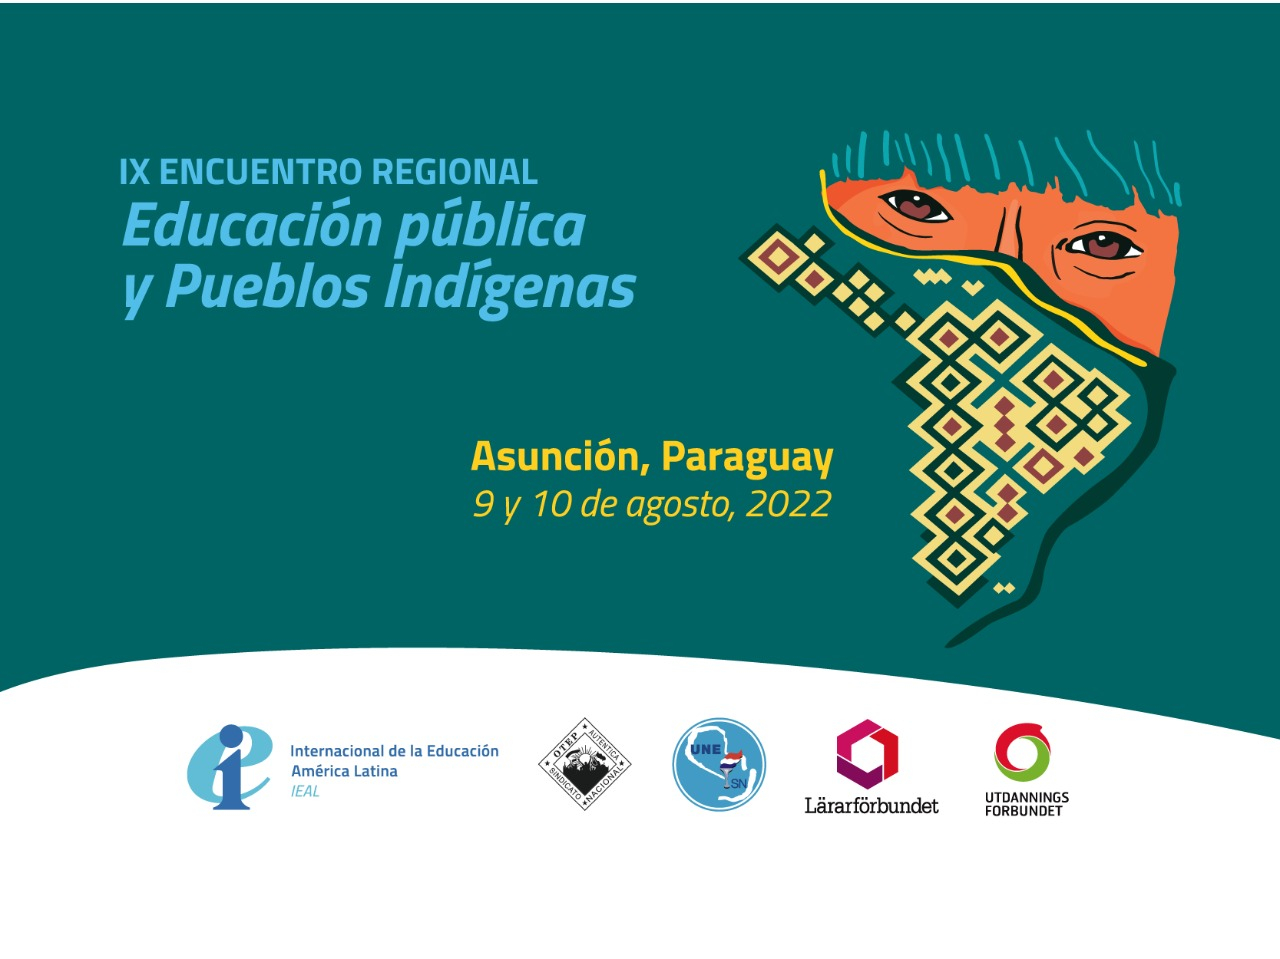 Docentes indígenas de toda Latinoamérica dialogarán sobre educación pública  